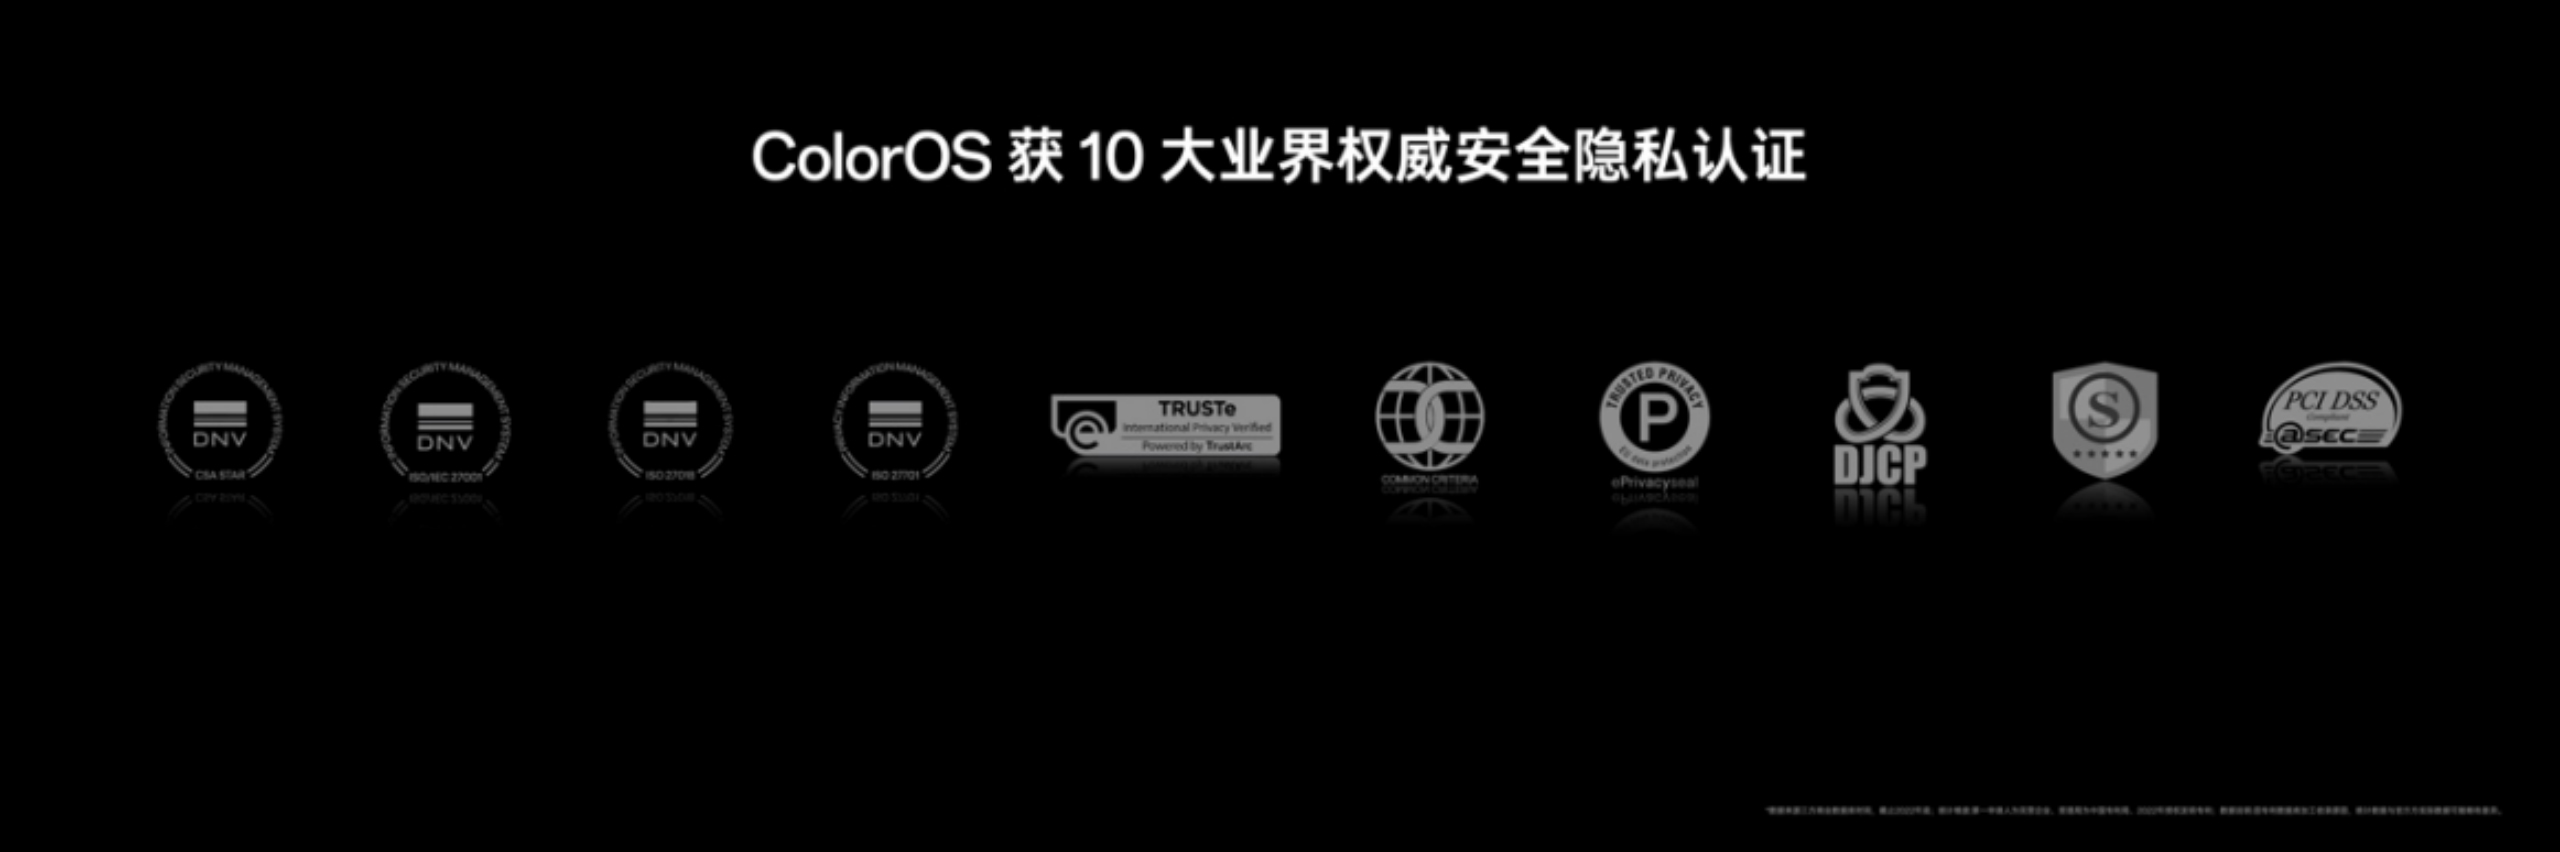 副本【新闻稿】OPPO 发布全新影像旗舰 Find X6 系列，引领移动影像进入全主摄时代 6205.jpg